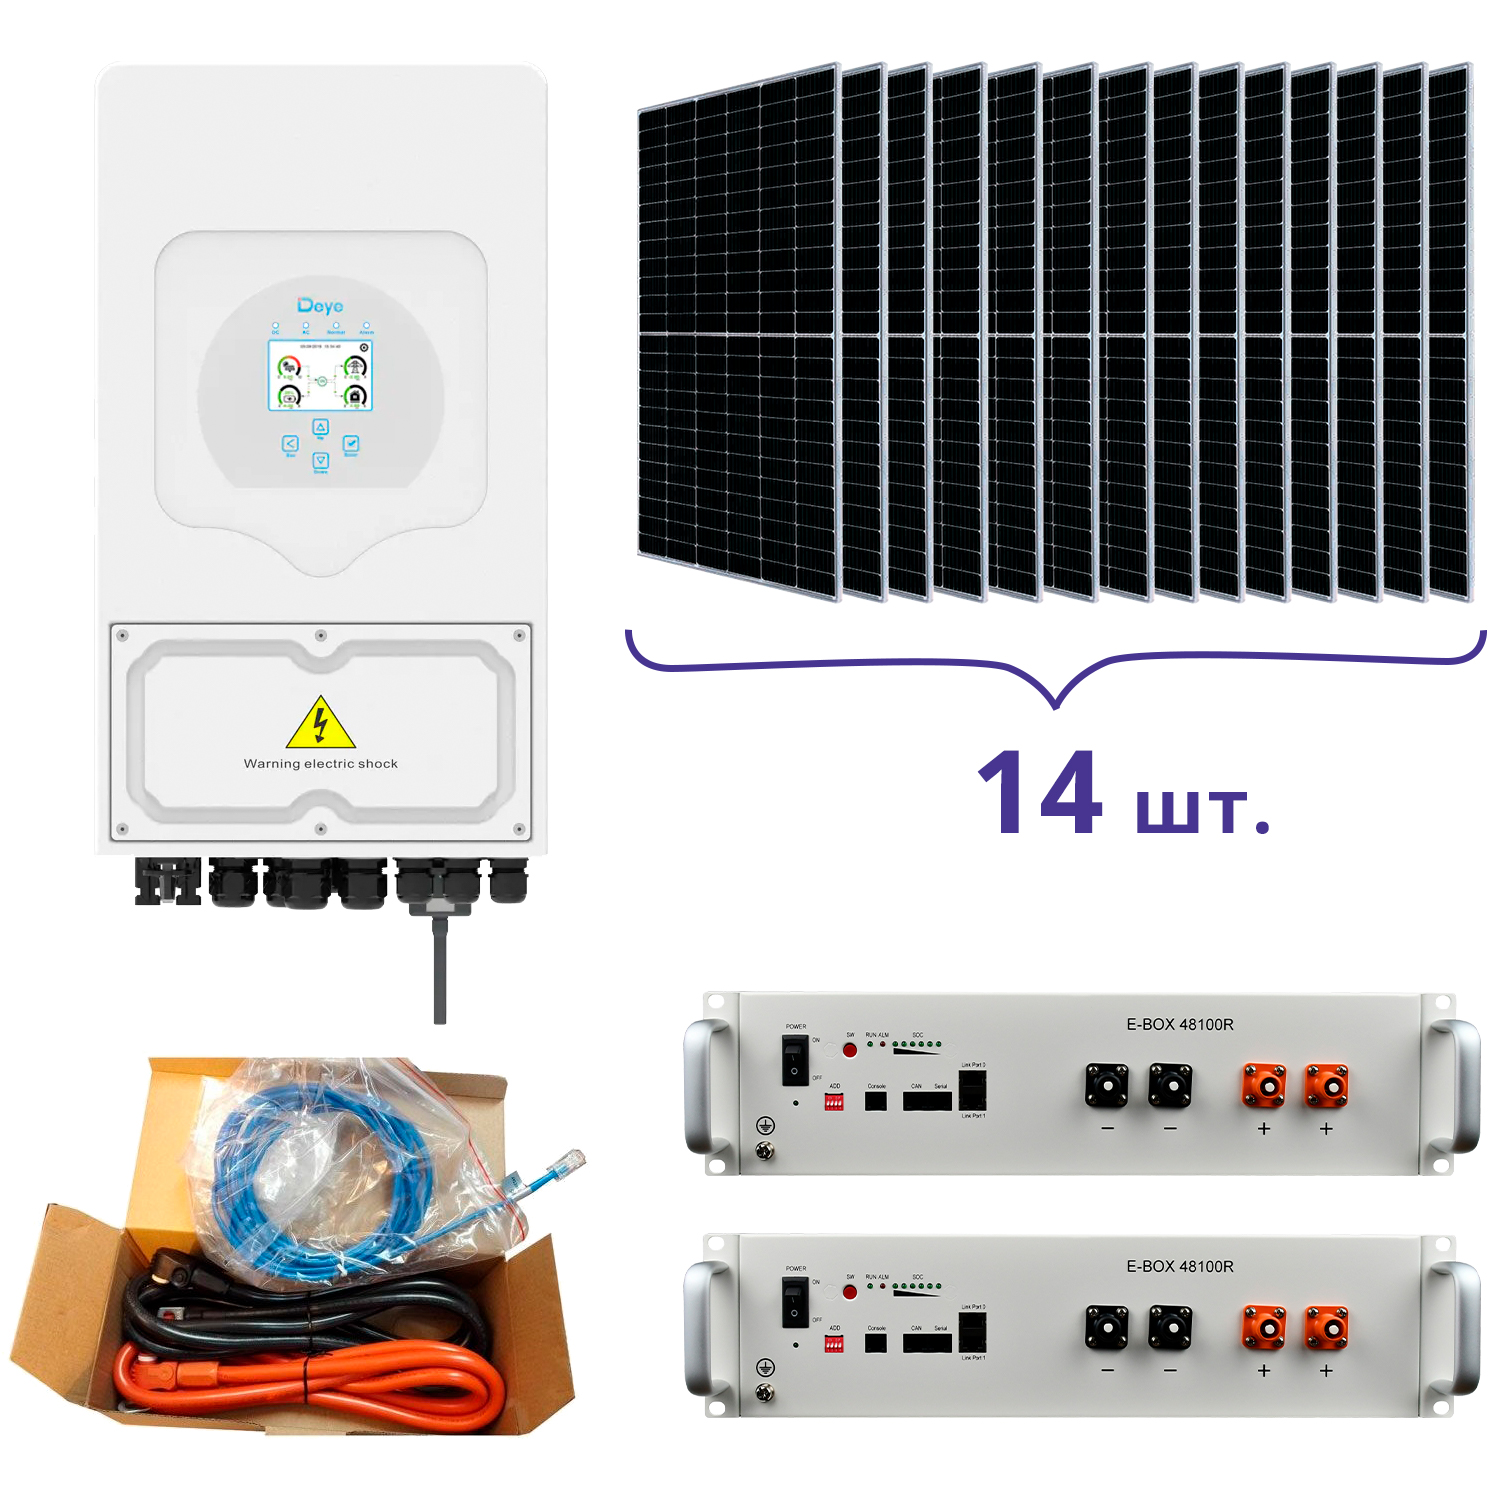 Deye SUN-5K-SG03LP1-EU+Pytes E-BOX-48100R-2шт.+Battery Cable Kit-1шт.+JA Solar JAM72S20-460/MR 460 Wp, Mono-14шт.